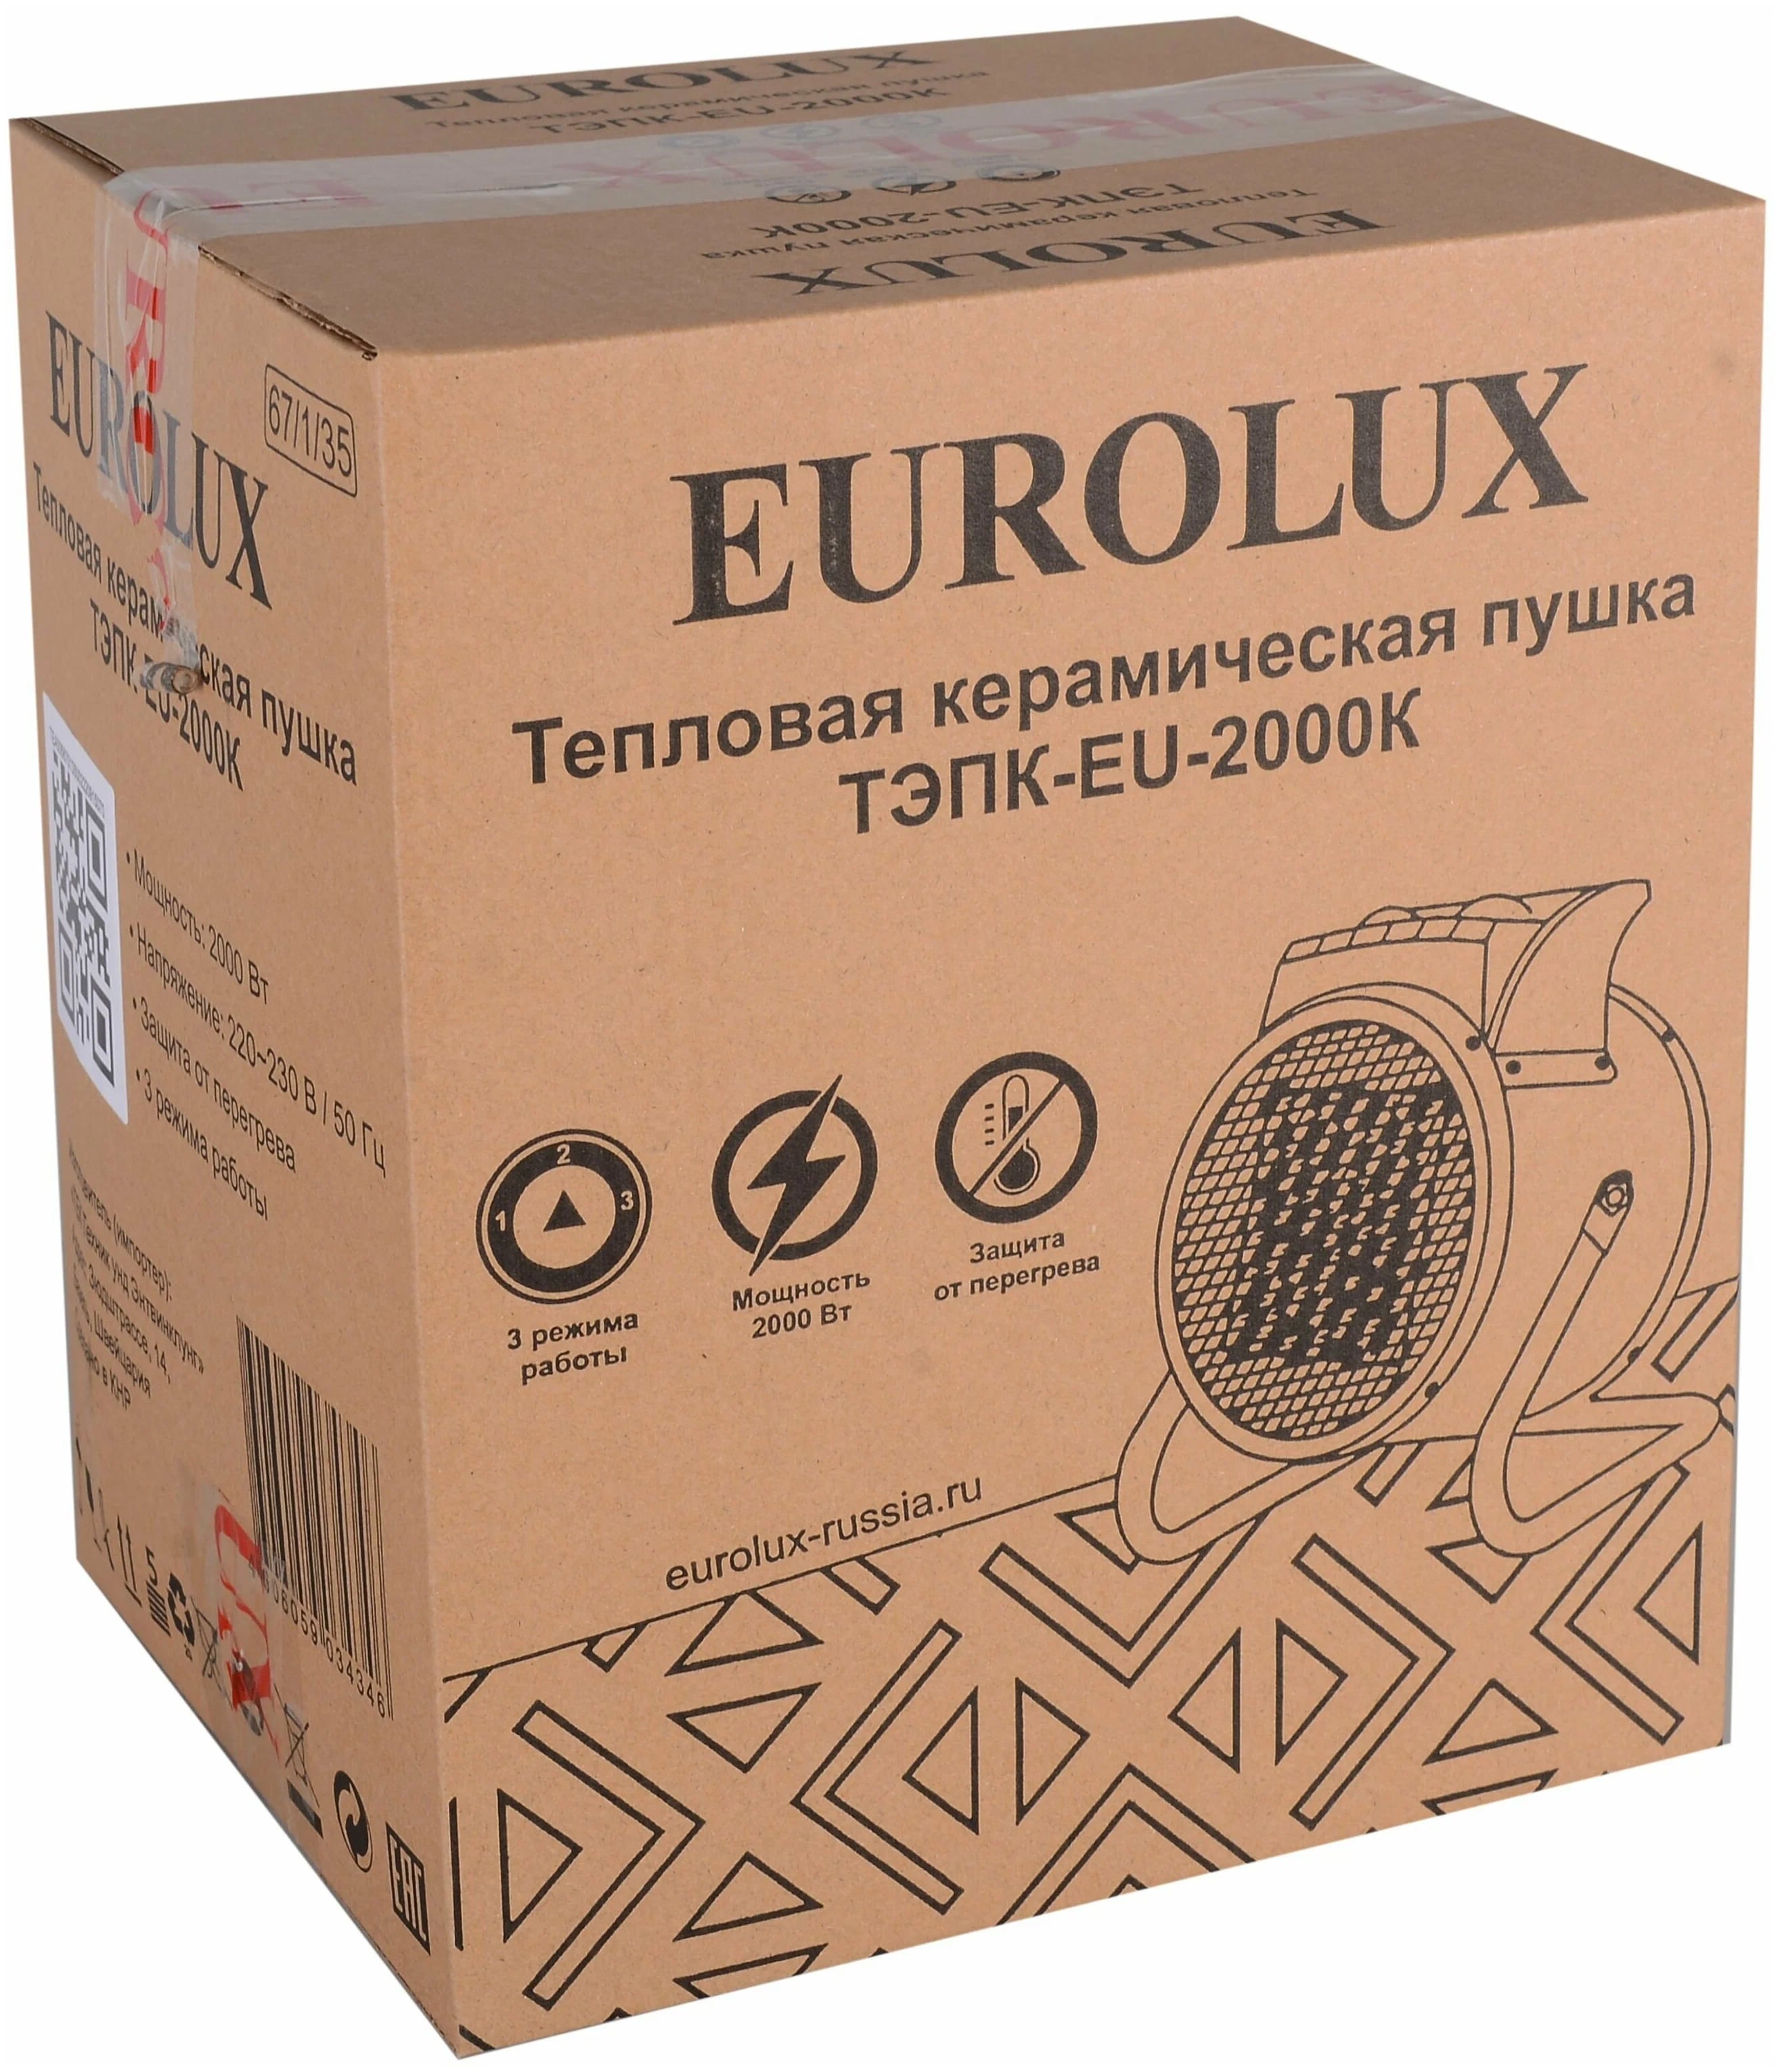 Коробка Eurolux ТЭПК-EU-2000K